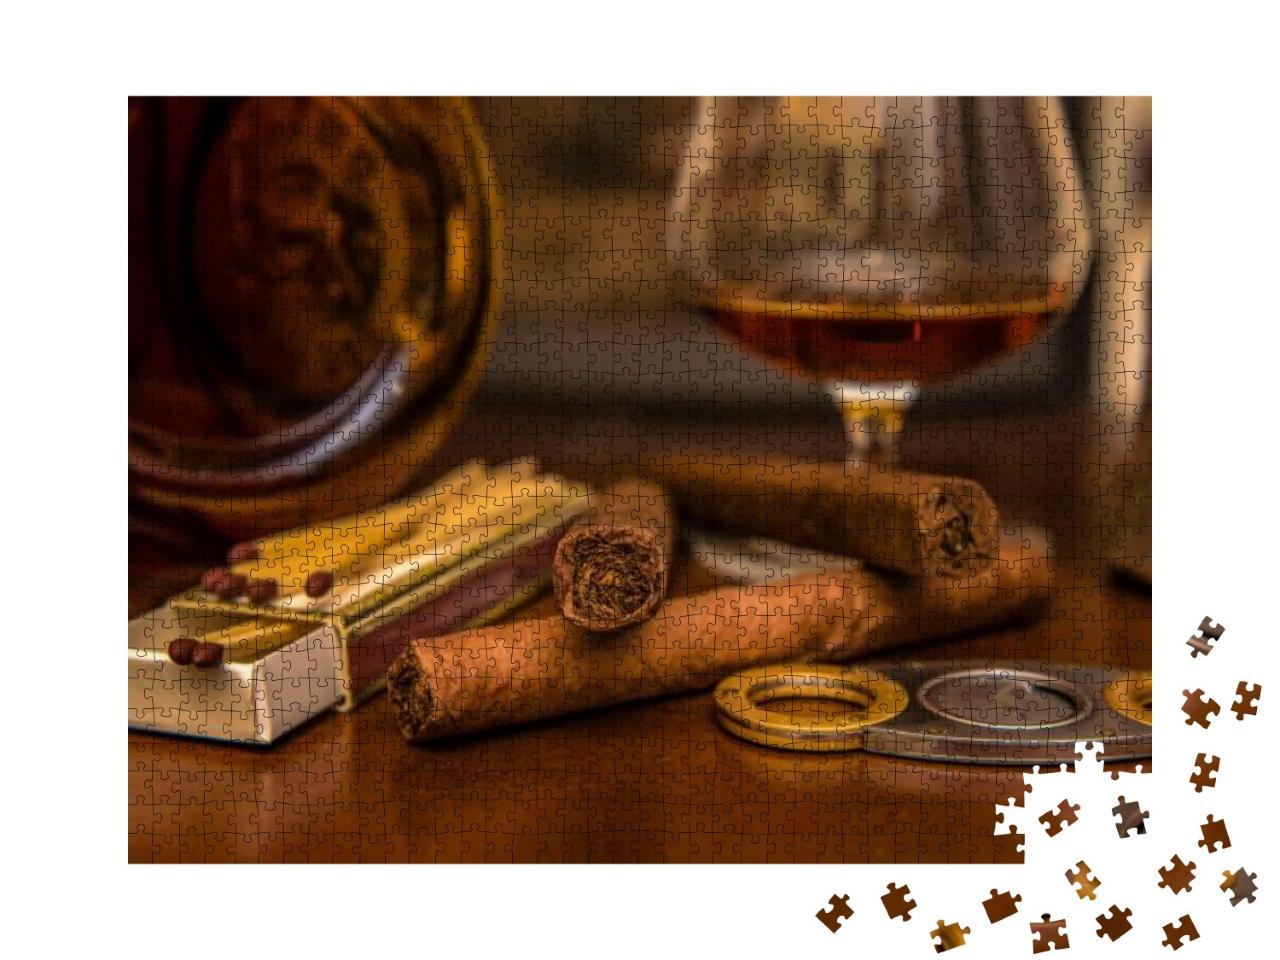 Puzzle 1000 Teile „Kubanisches Lebensgefühl - Zigarren und Rum“